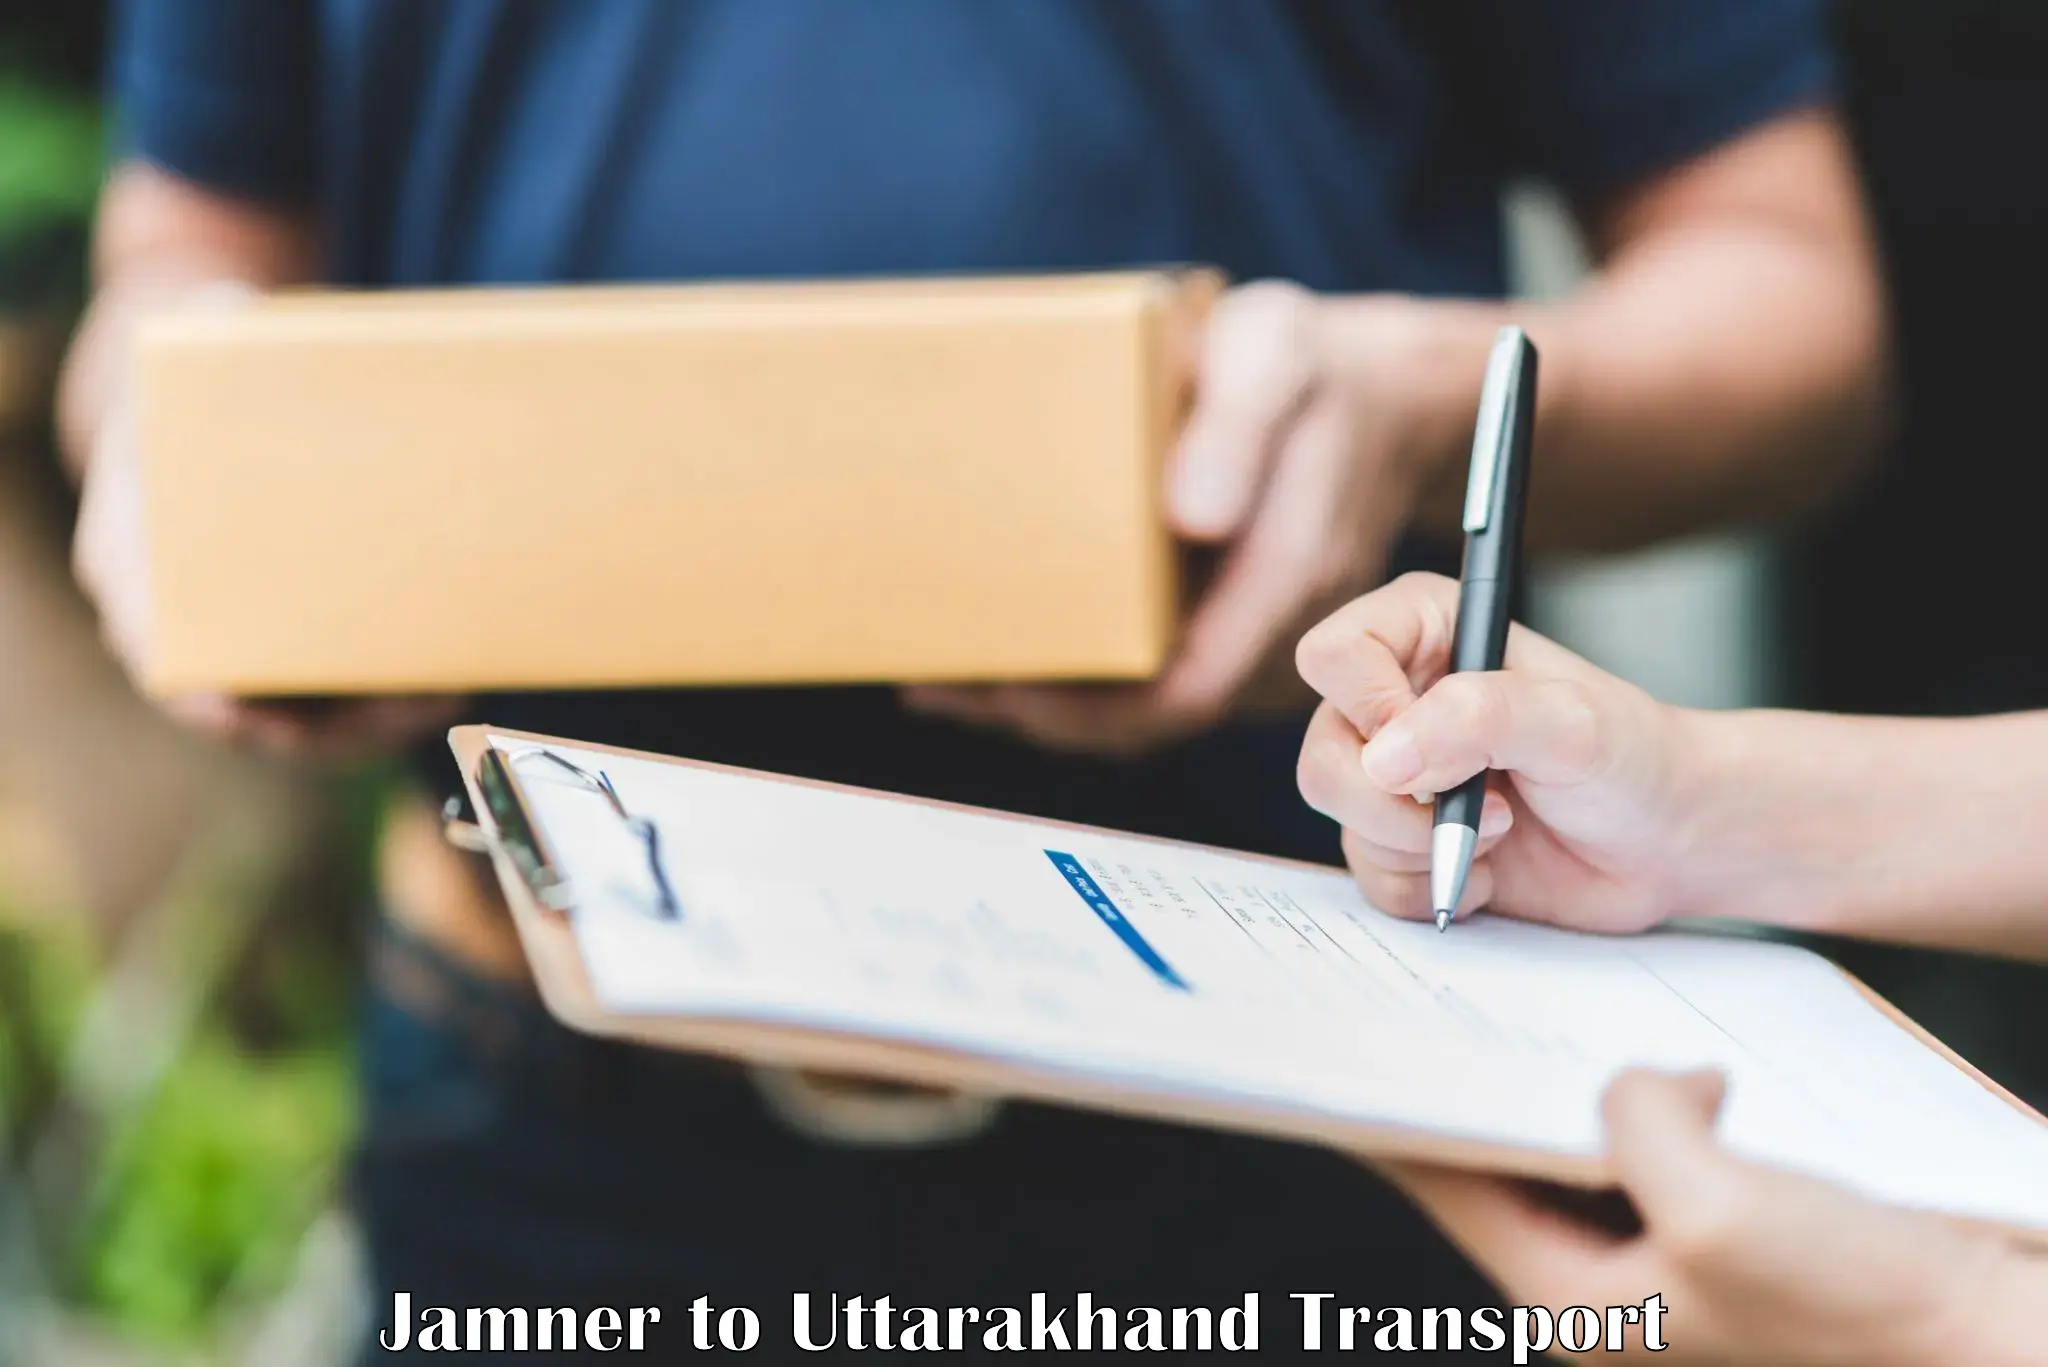 Furniture transport service Jamner to Lohaghat